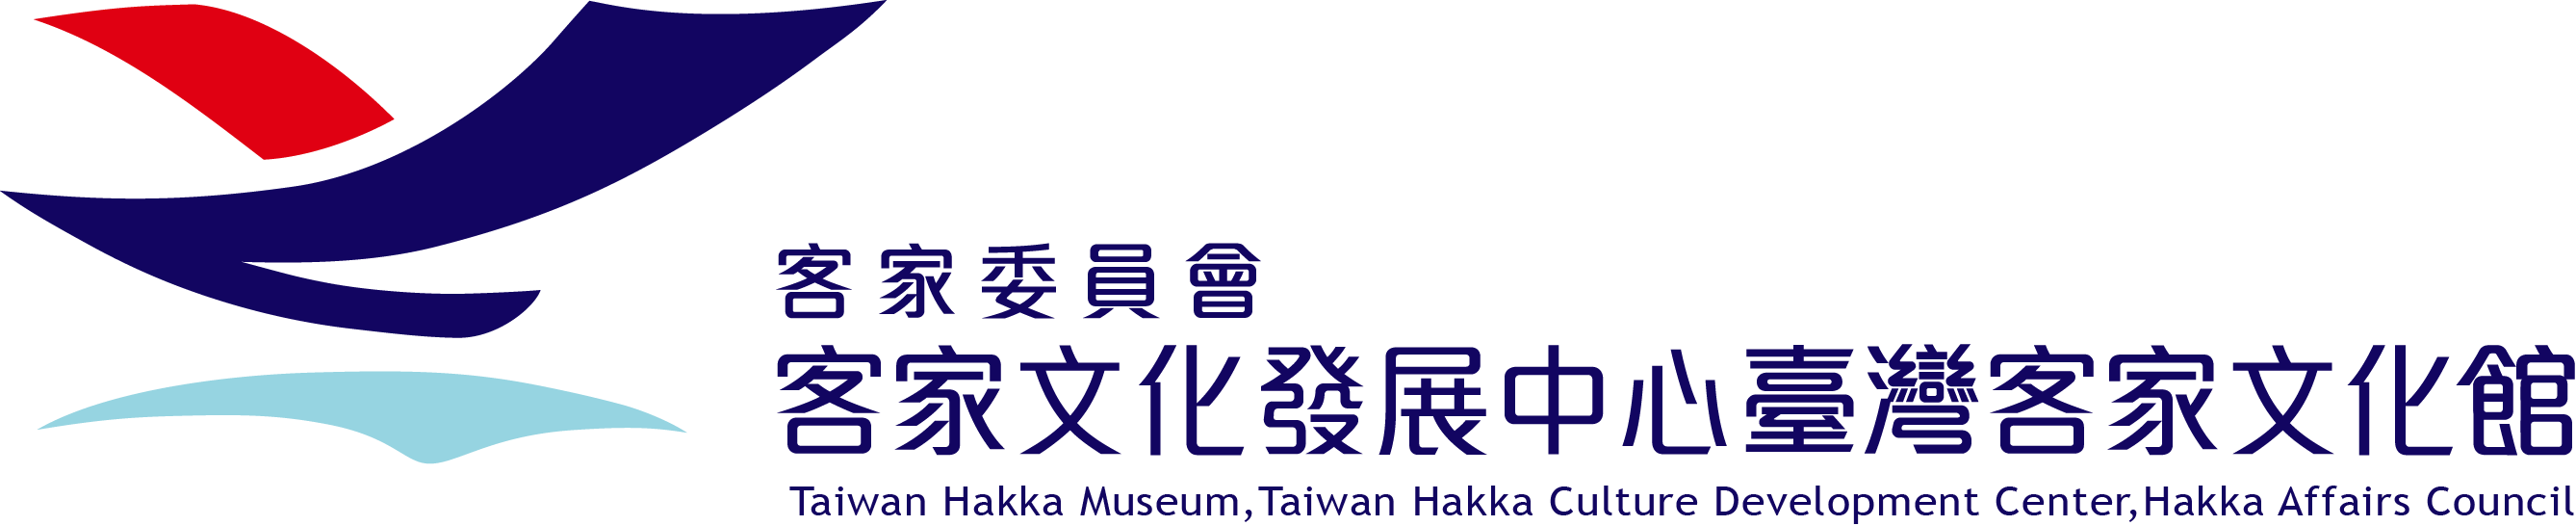 臺灣客家文化館中文網 logo